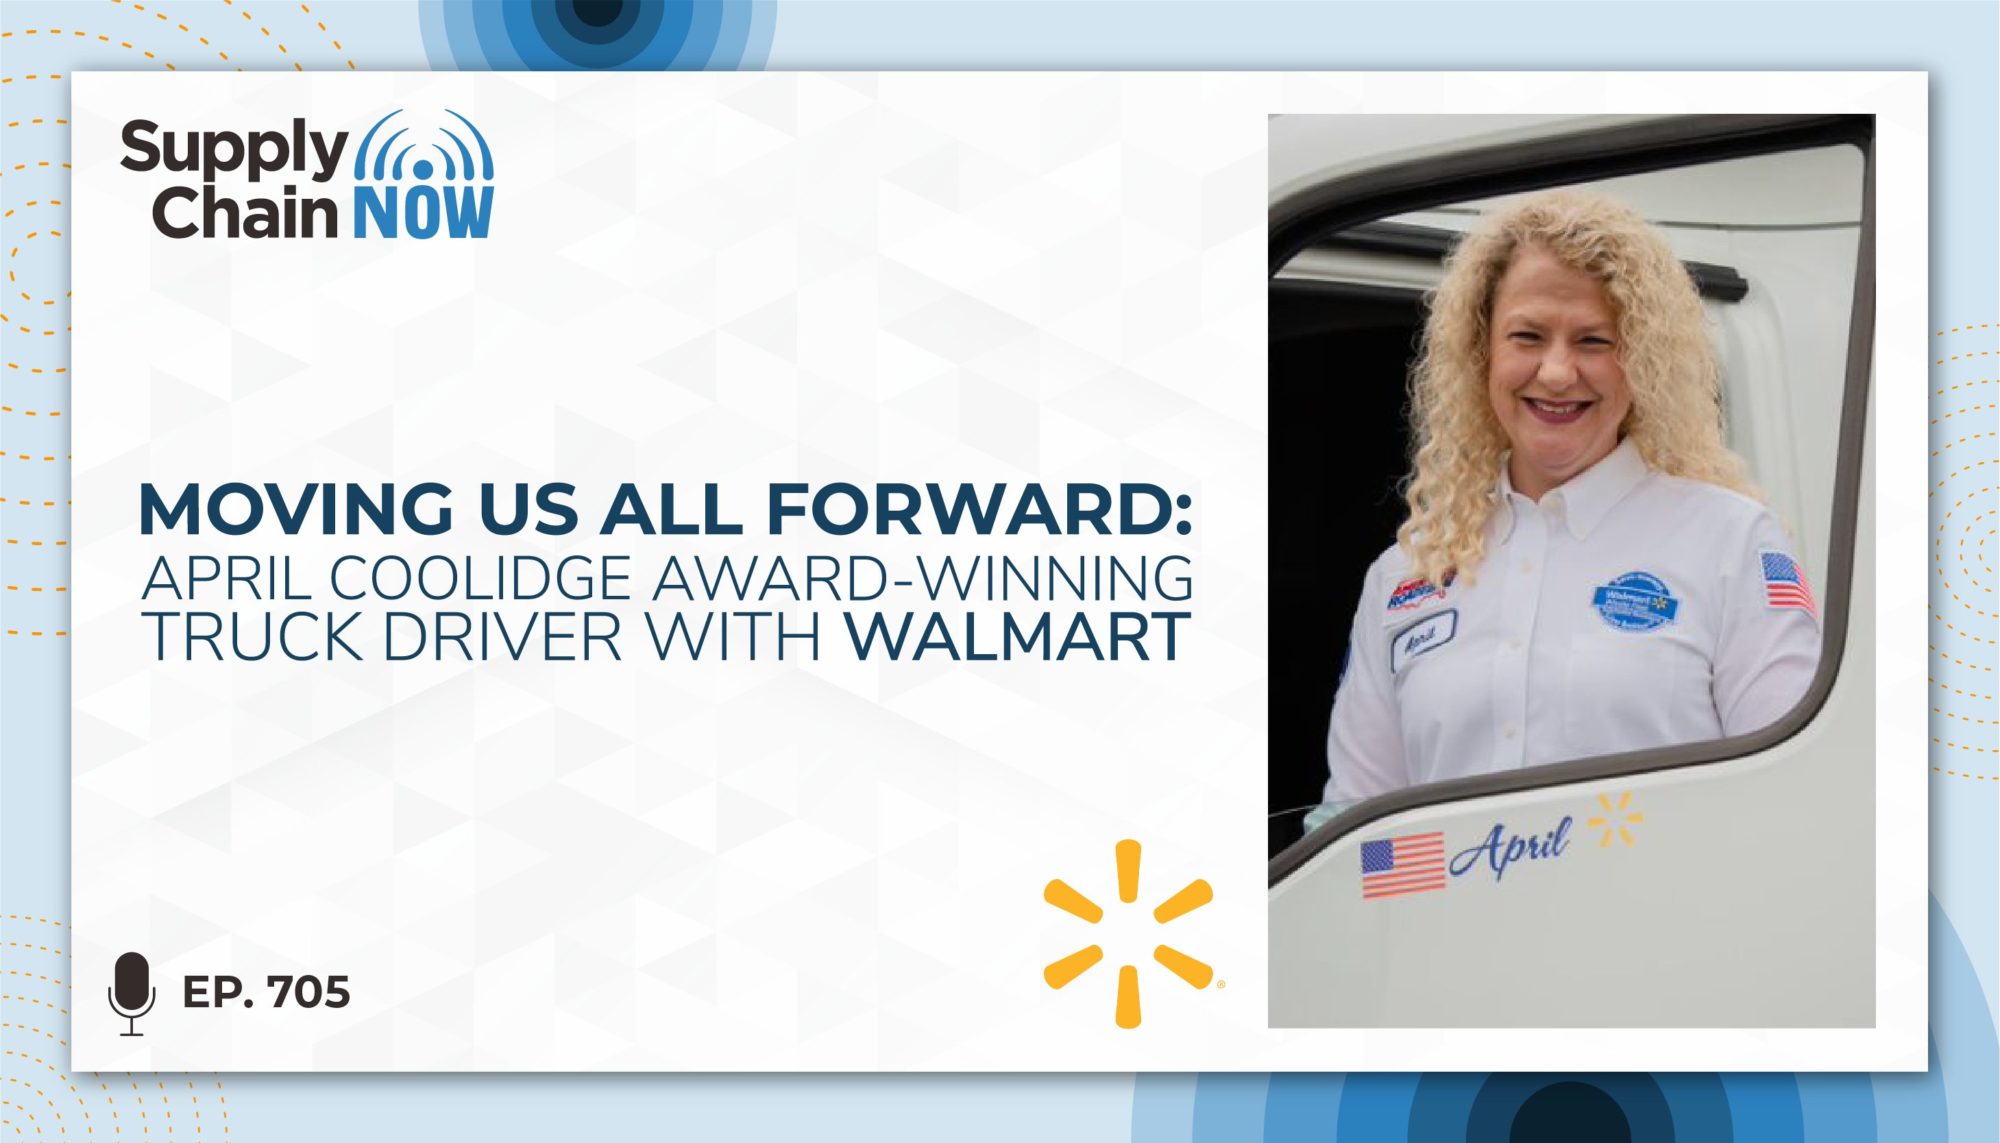 April Coolidge, Walmart's Award-Winning Truck Driver